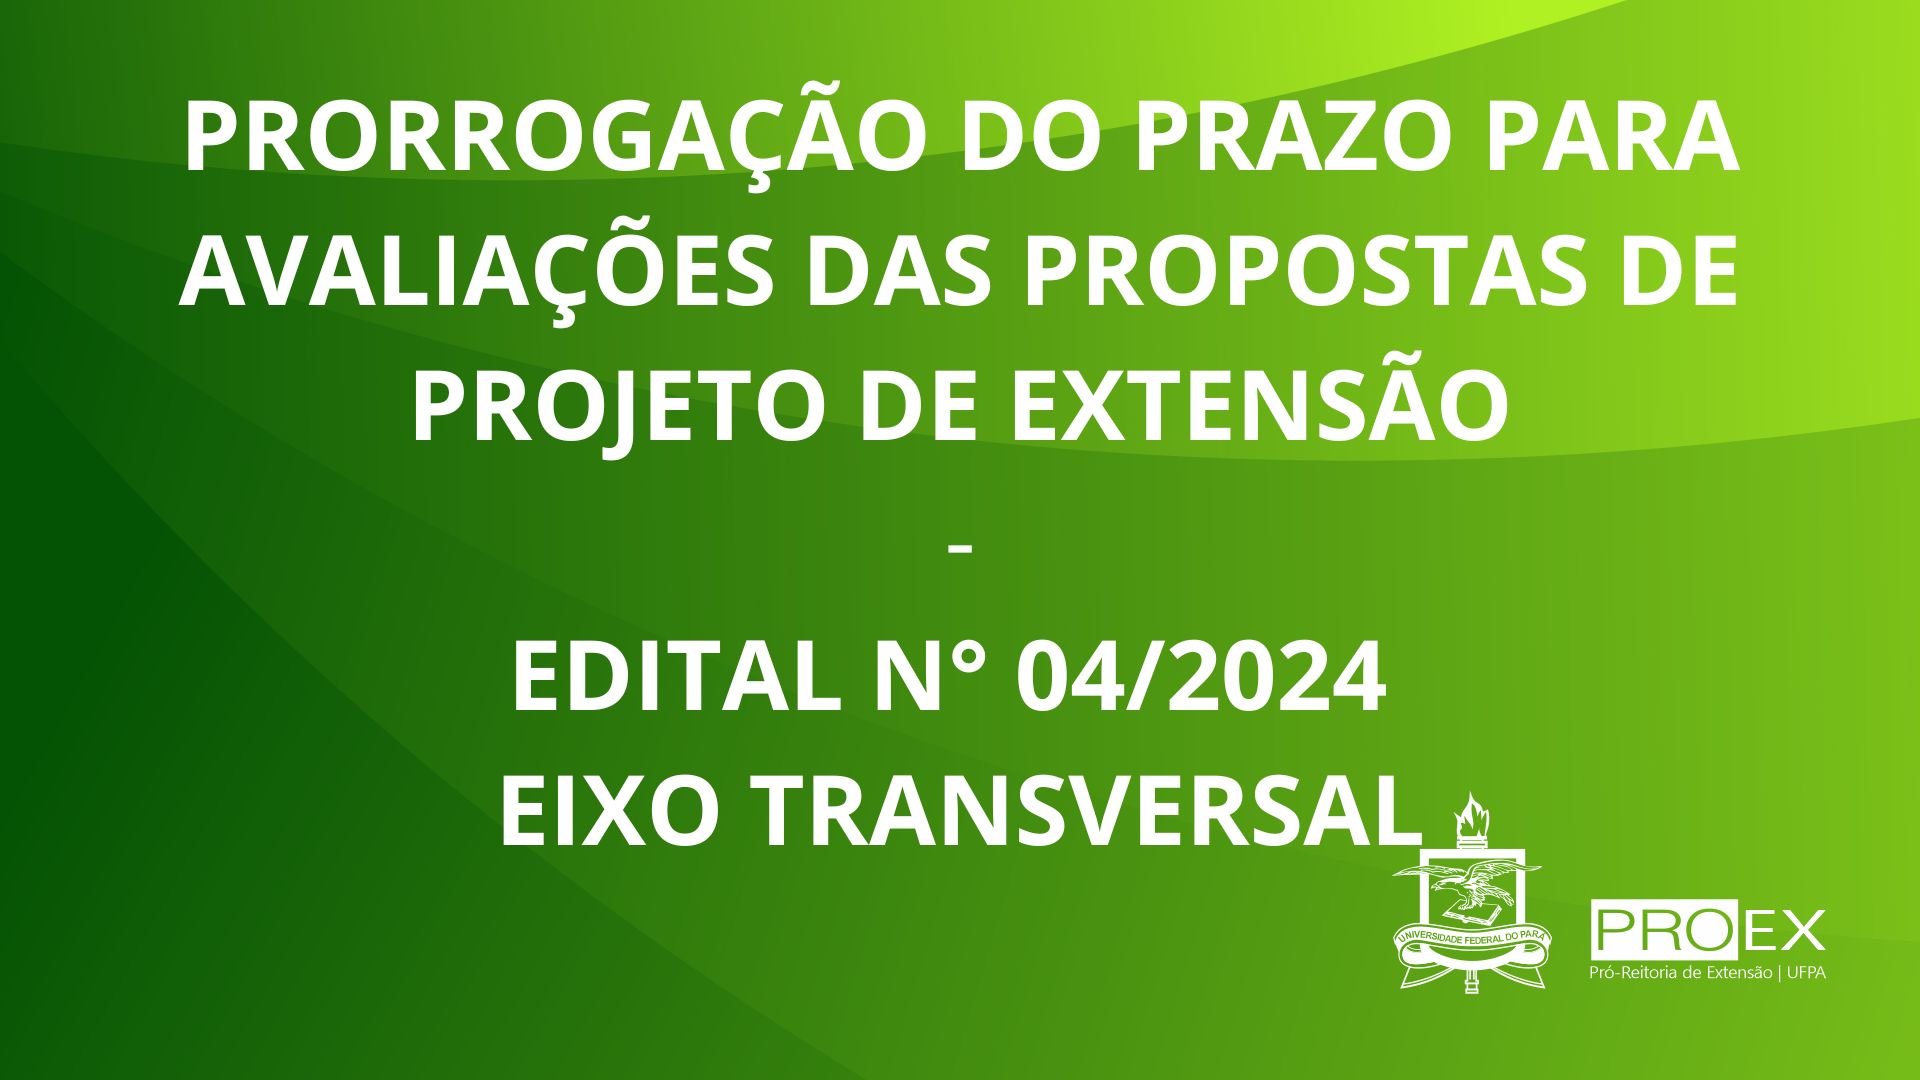 Edital Nº 04/2024 - PRORROGAÇÃO DO PRAZO PARA AVALIAÇÕES DAS PROPOSTAS DE PROJETO DE EXTENSÃO 